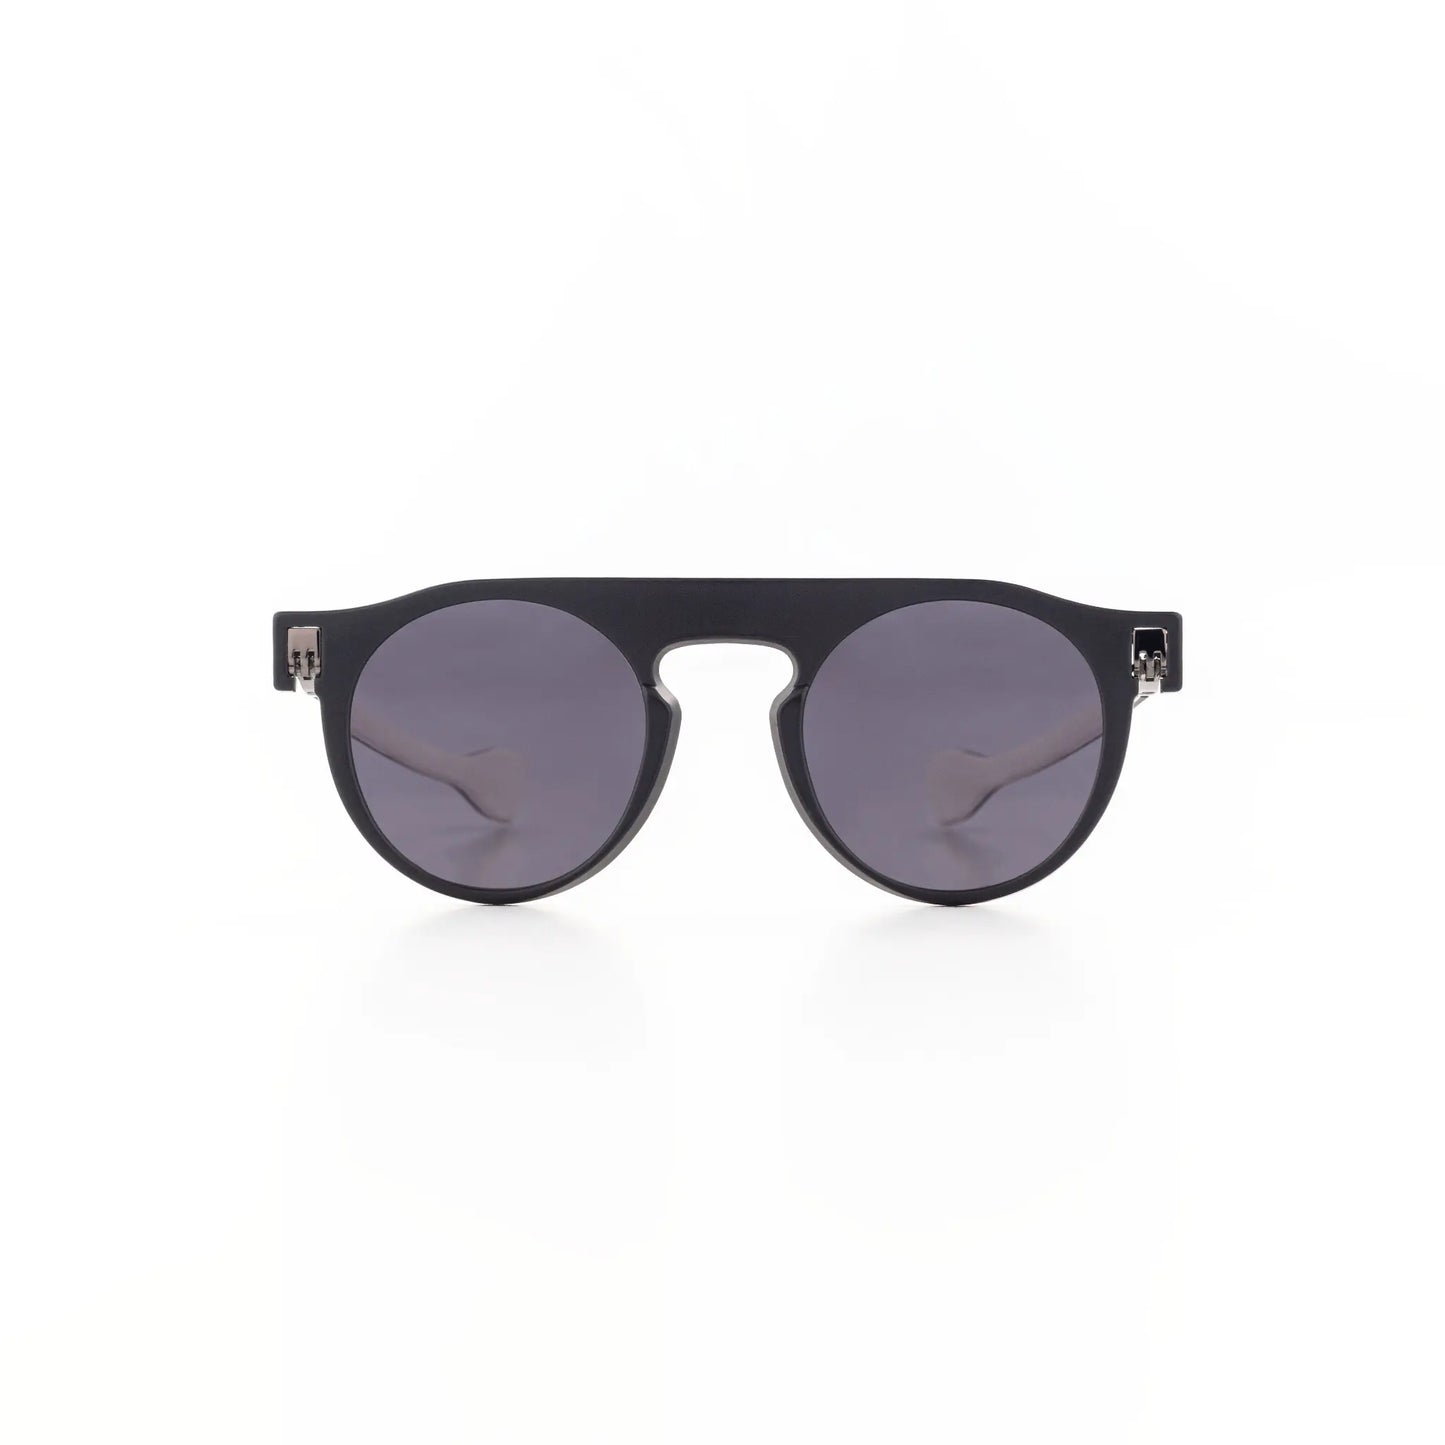 Reverso sunglasses black & white reversible & ultra light front view 2